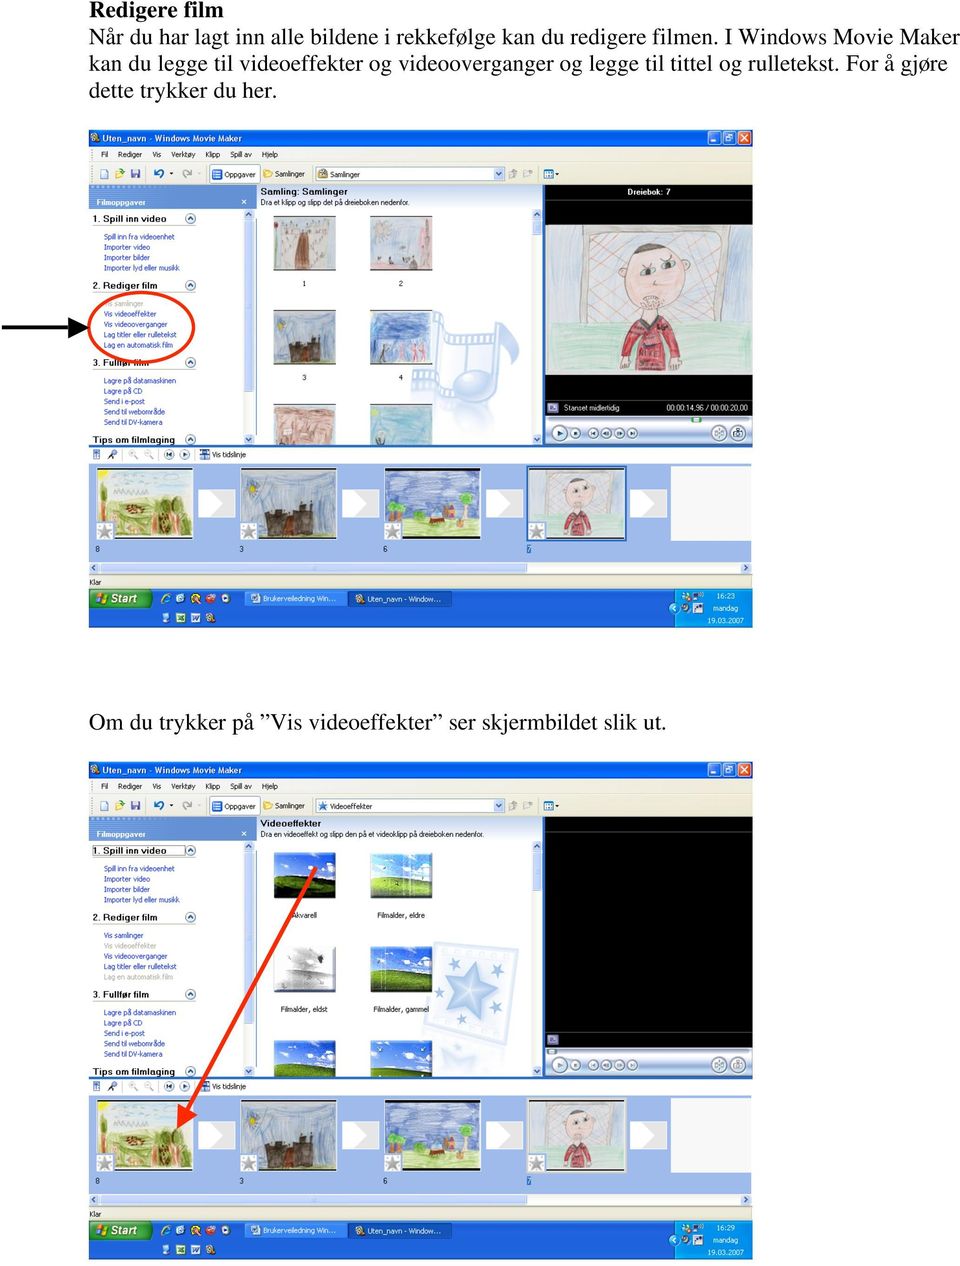 I Windows Movie Maker kan du legge til videoeffekter og videooverganger